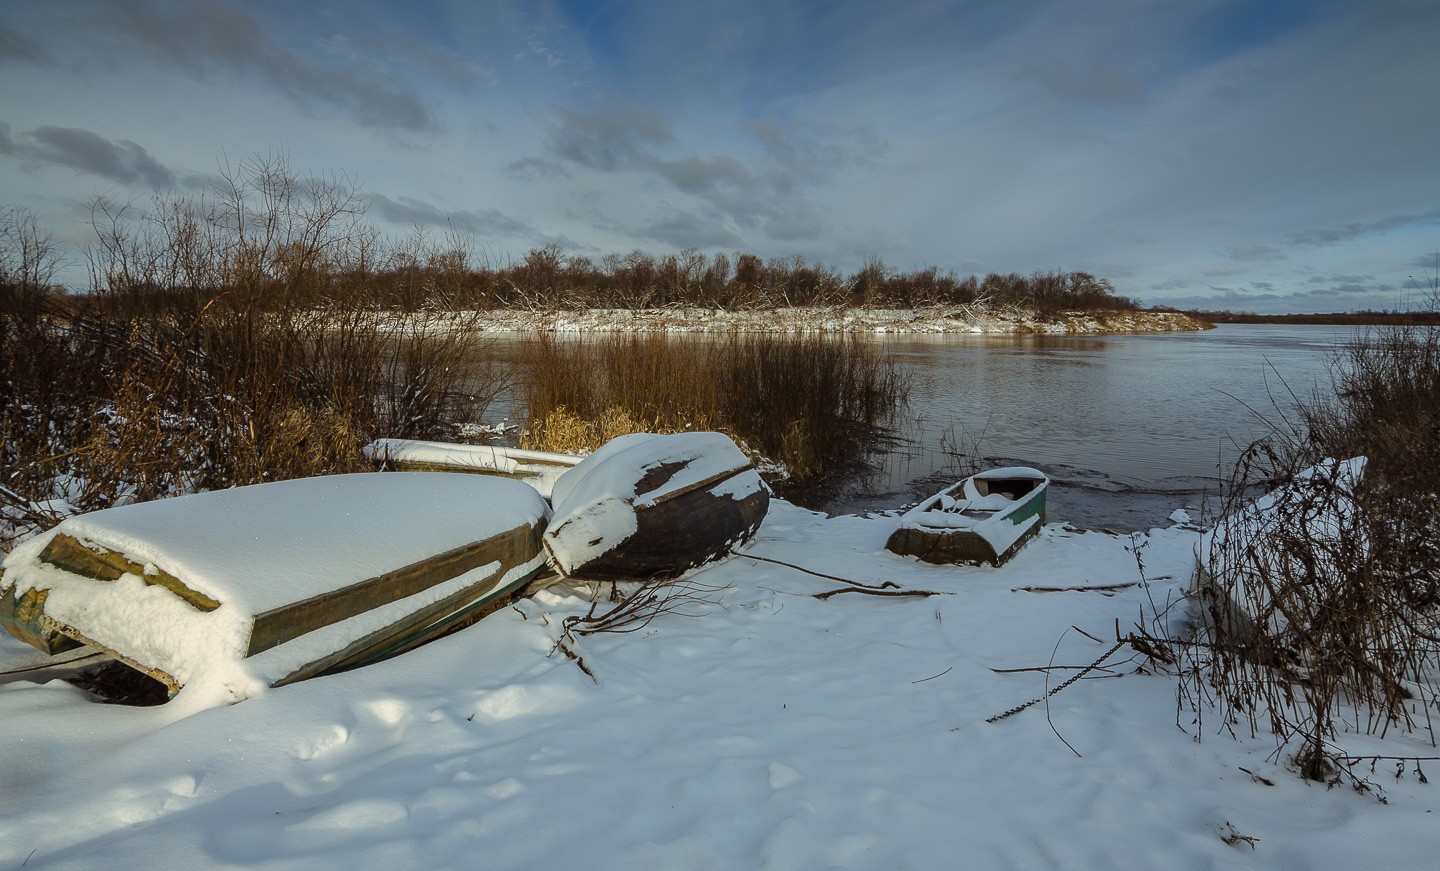 Фотография - Первый визит зимы, автор - Валентин Котляров